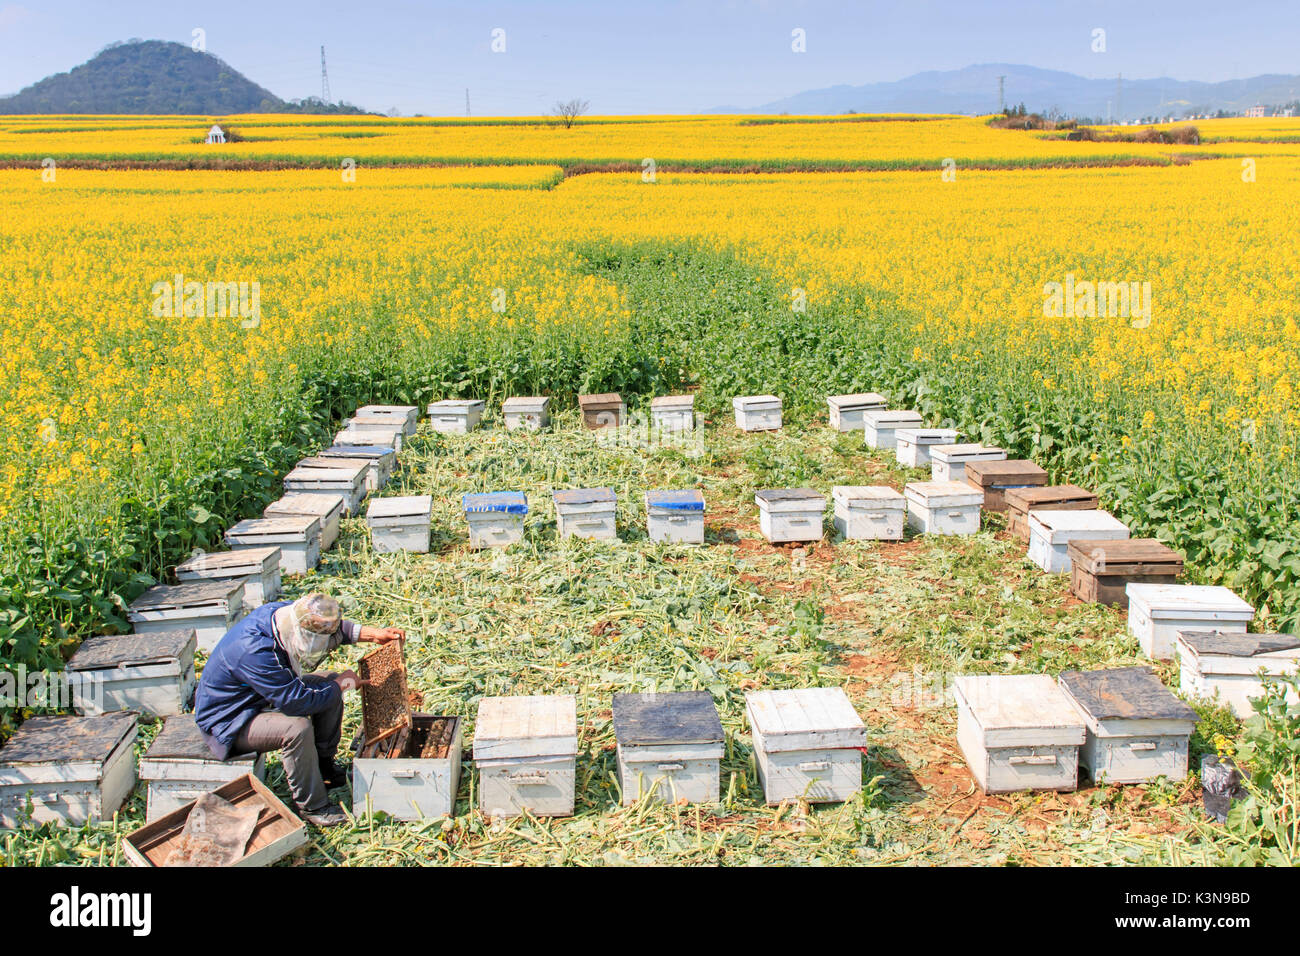 Apicoltore lavorare tra i fiori di colza campi di Luoping in Yunnan in Cina. Luoping è famosa per i fiori di colza che fioriscono in primavera Foto Stock